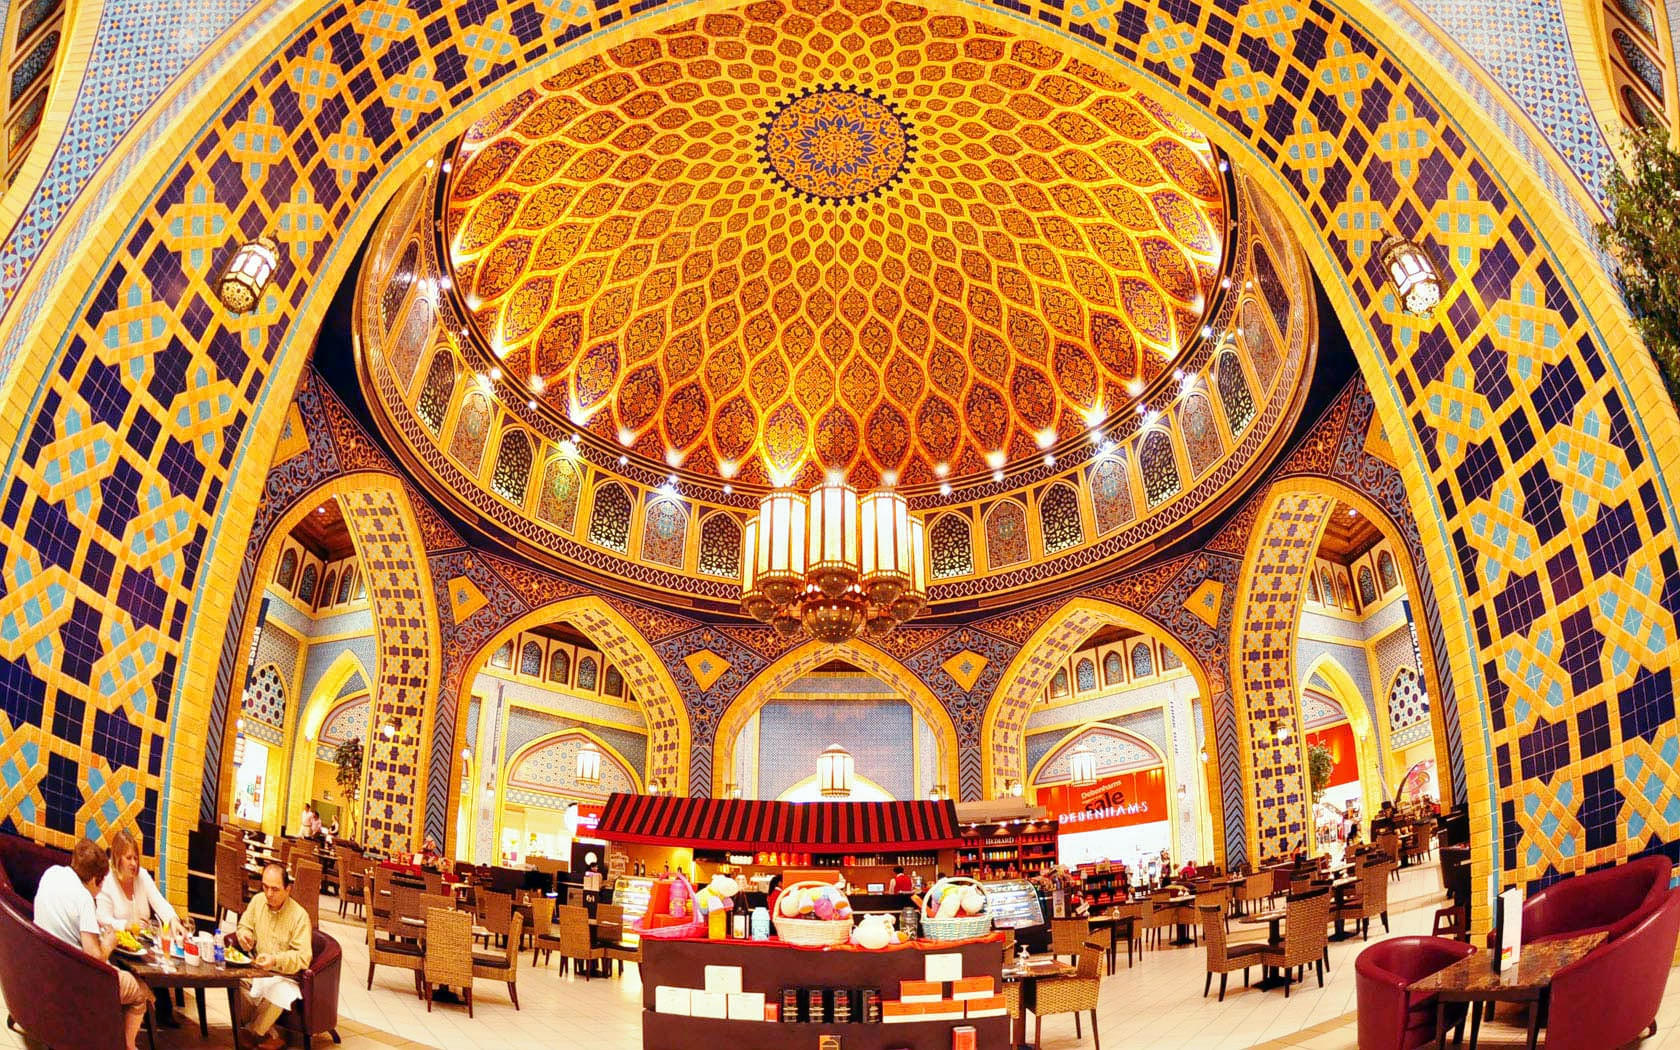 Ibn Battuta Mall Overview